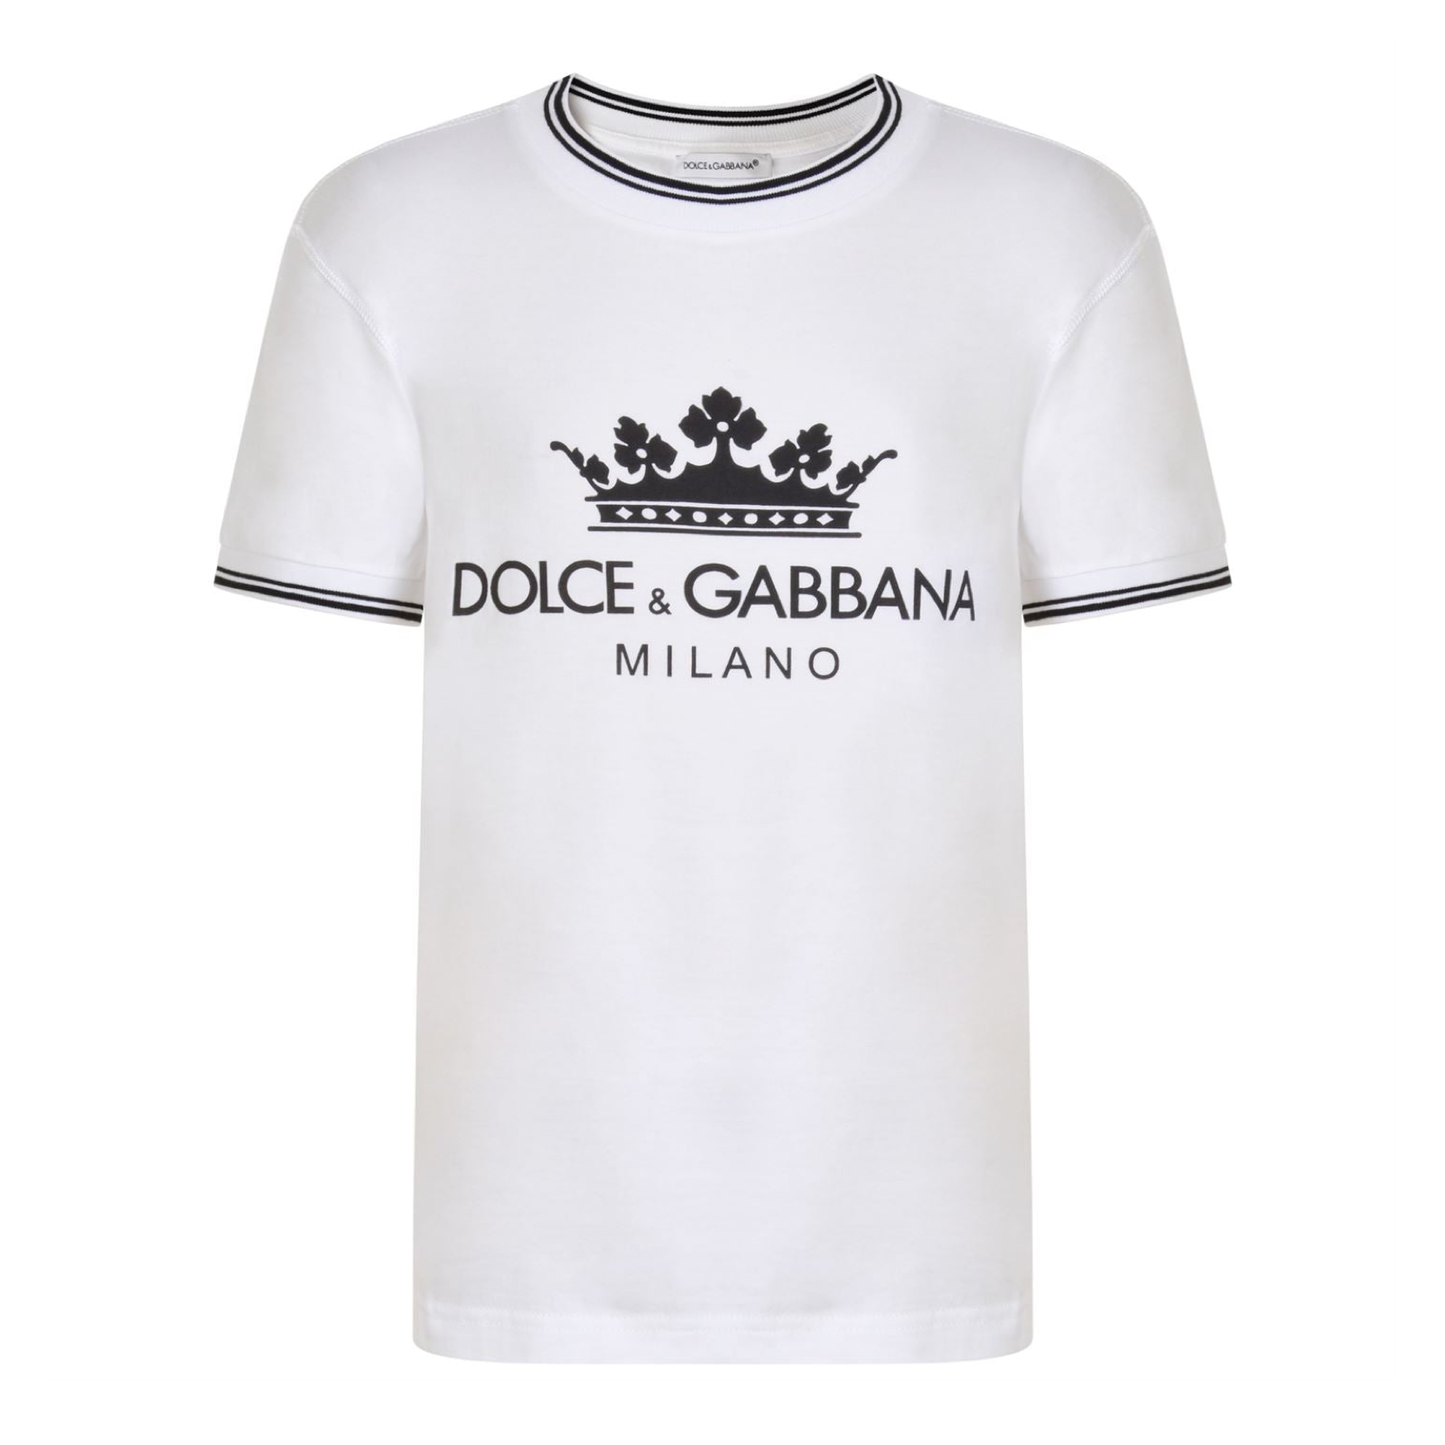 Kids Dolce & Gabbana White T Shirt - DANYOUNGUK